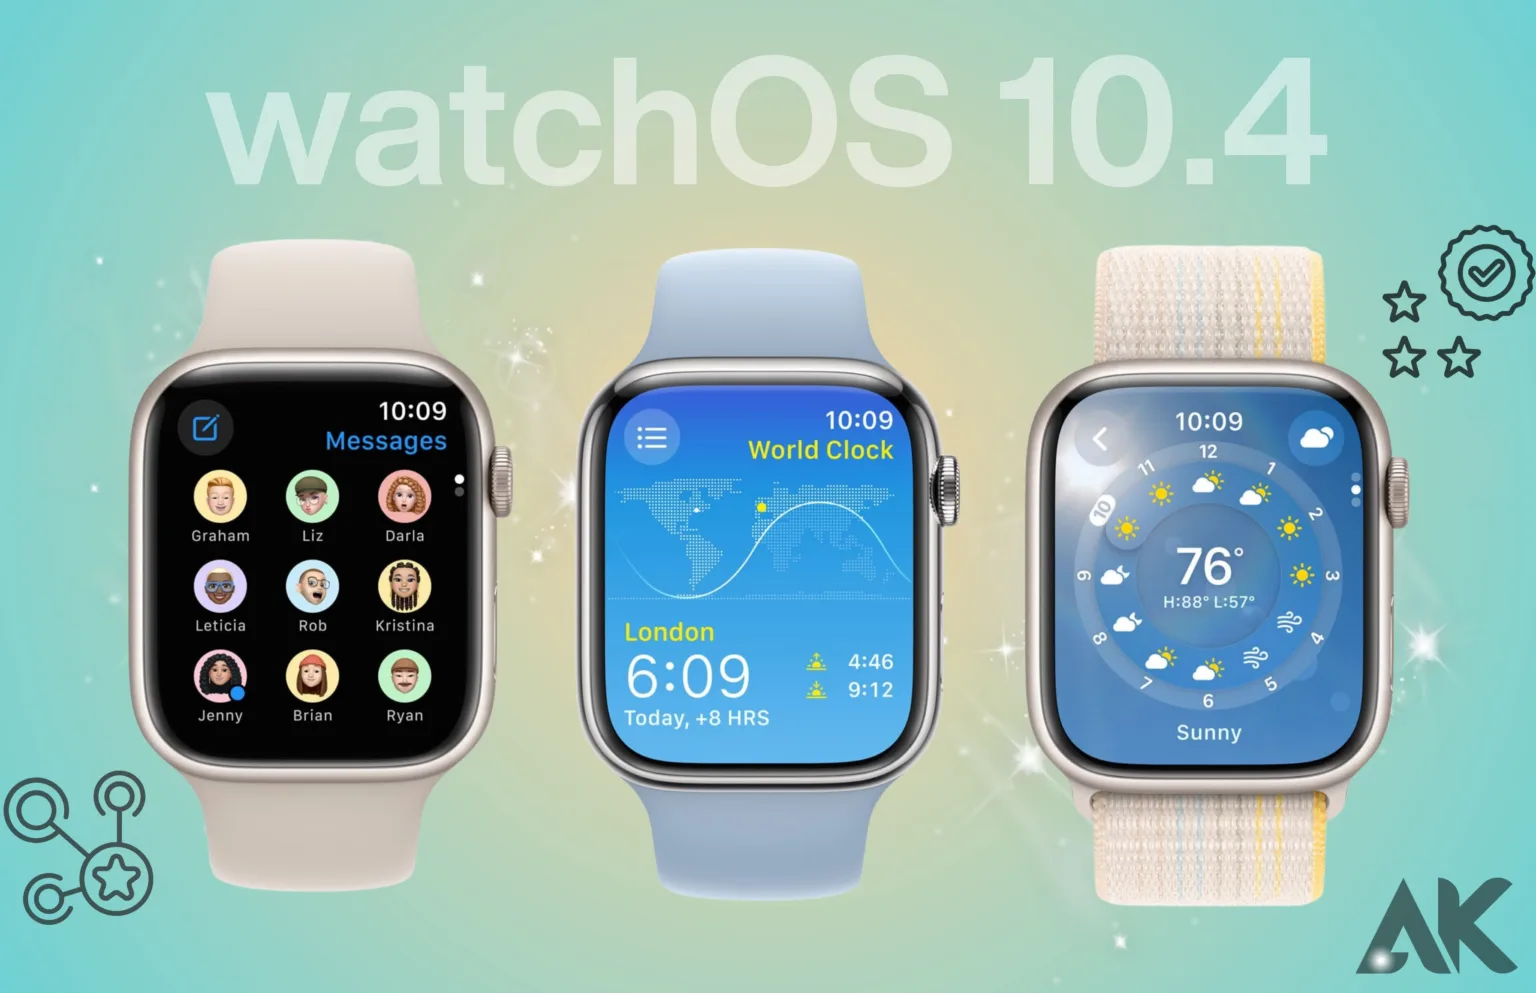 watchOS 10.4 features